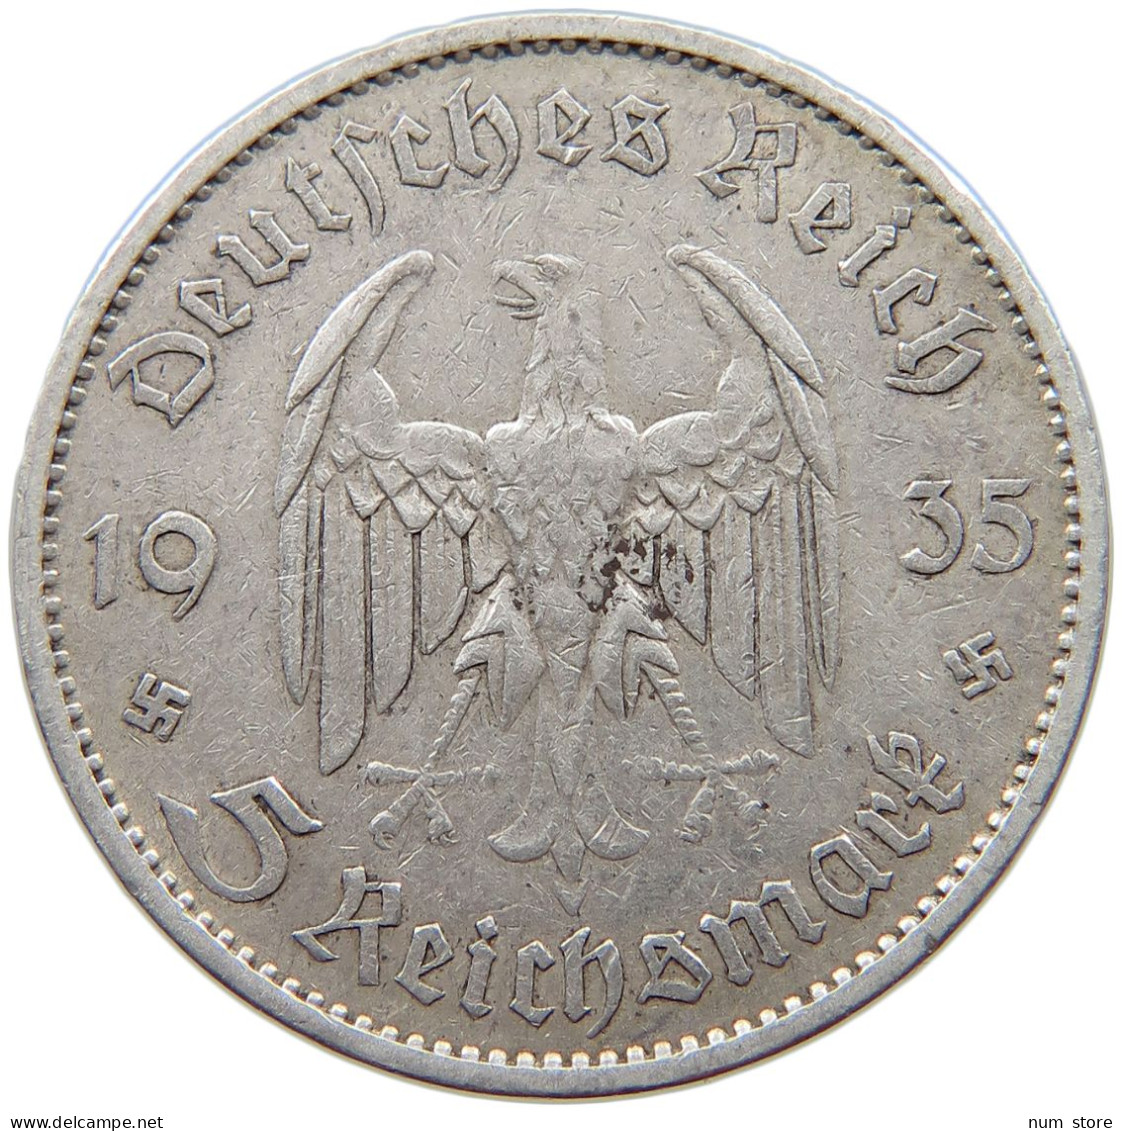 DRITTES REICH 5 MARK 1935 A  #a003 0289 - 5 Reichsmark